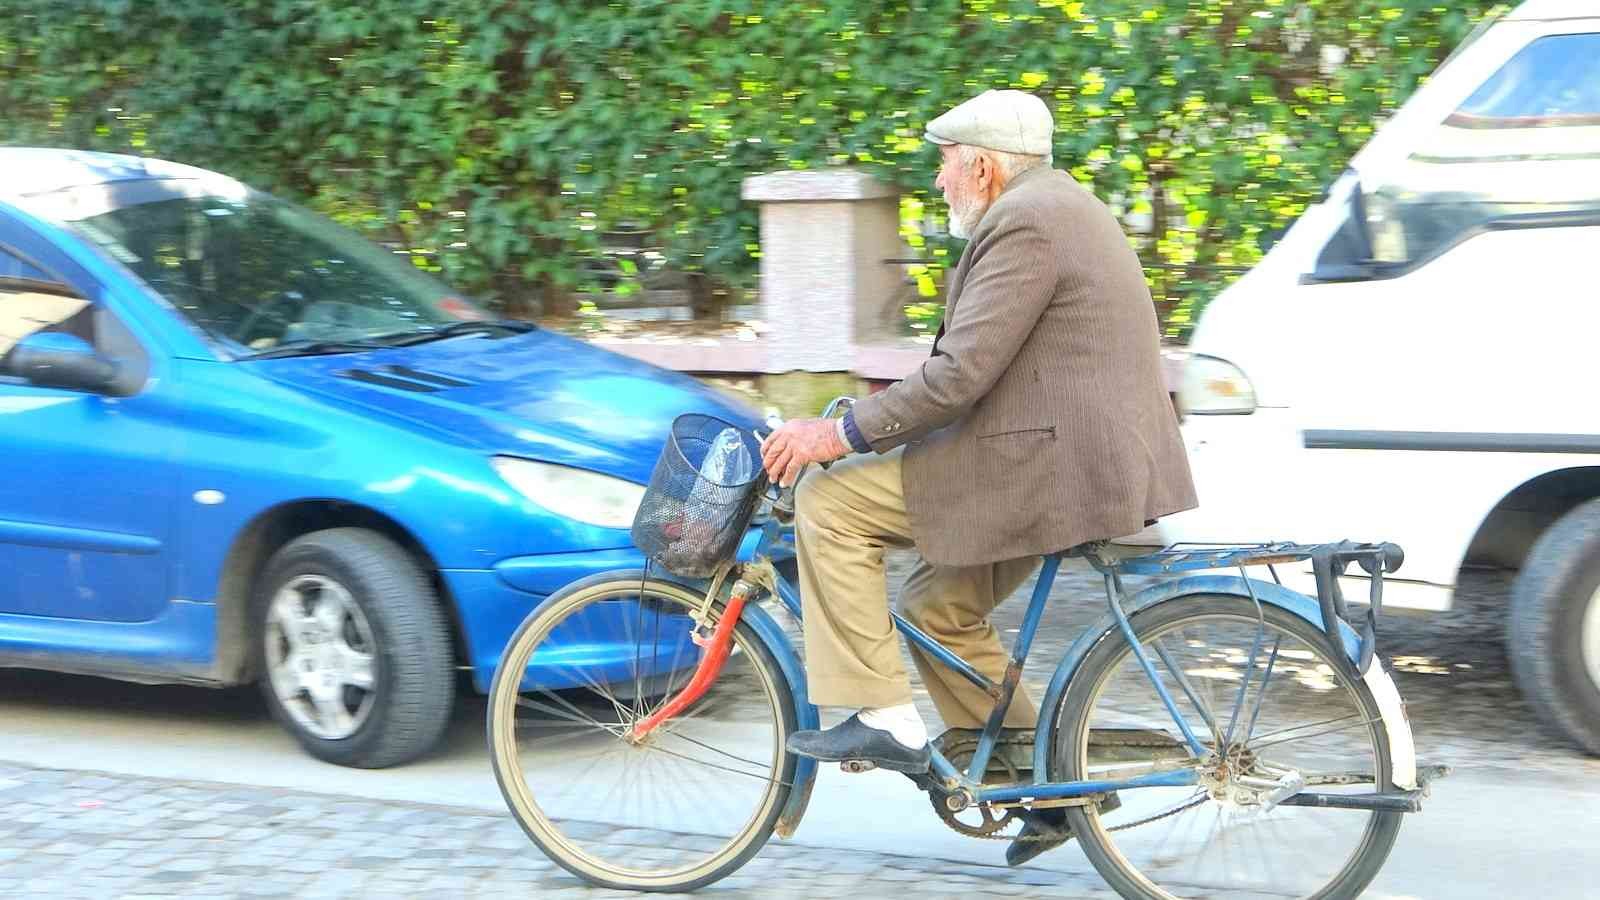 Ula’da 7’den 70’e vatandaşlar bisiklet kullanıyor